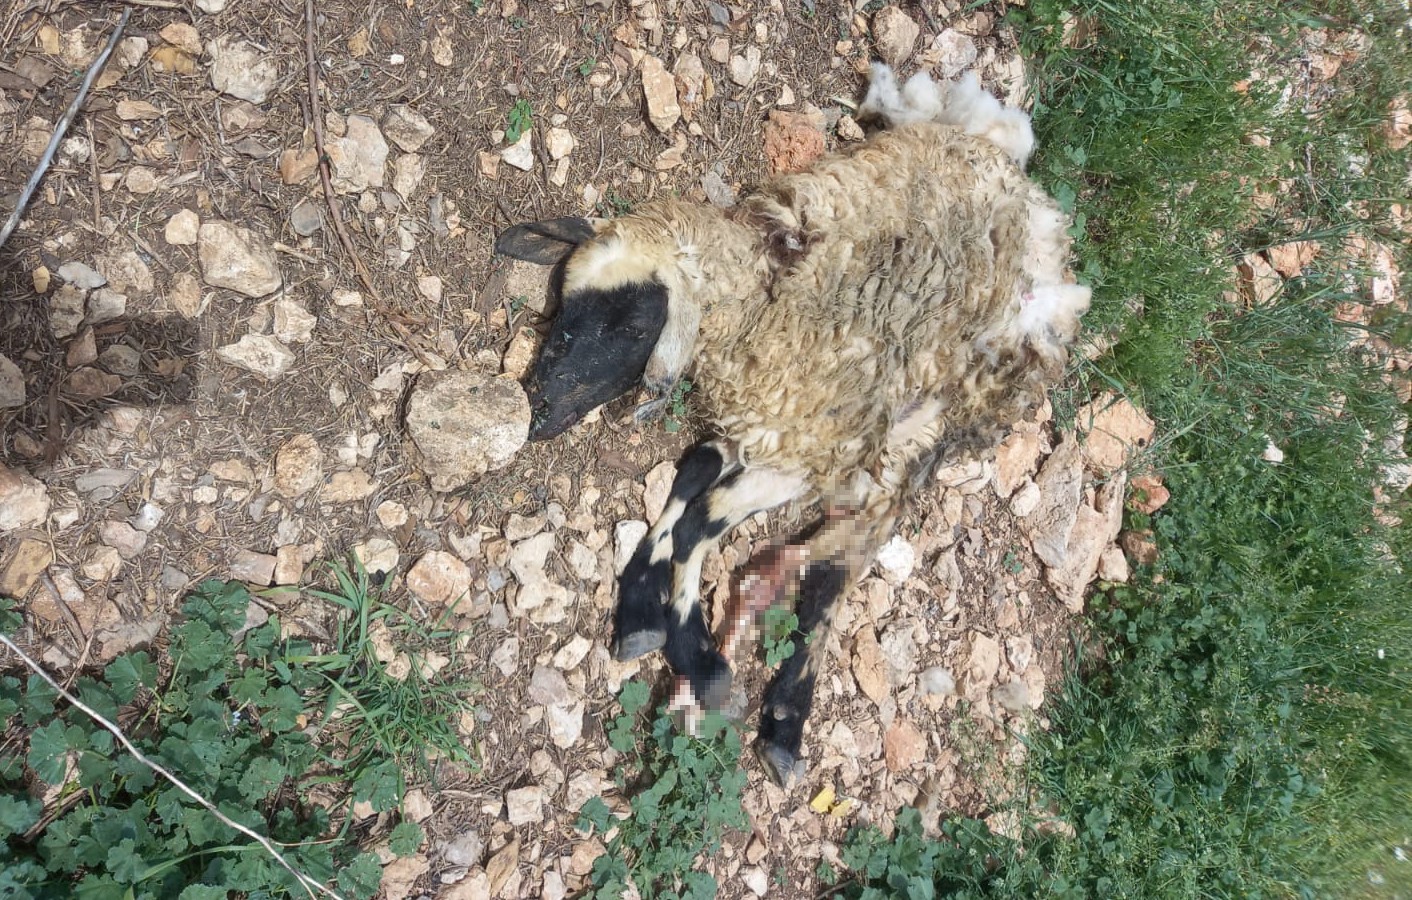 Tunceli'de Sürüye Saldıran Kurt, Çok Sayıda Koyunu Telef Etti